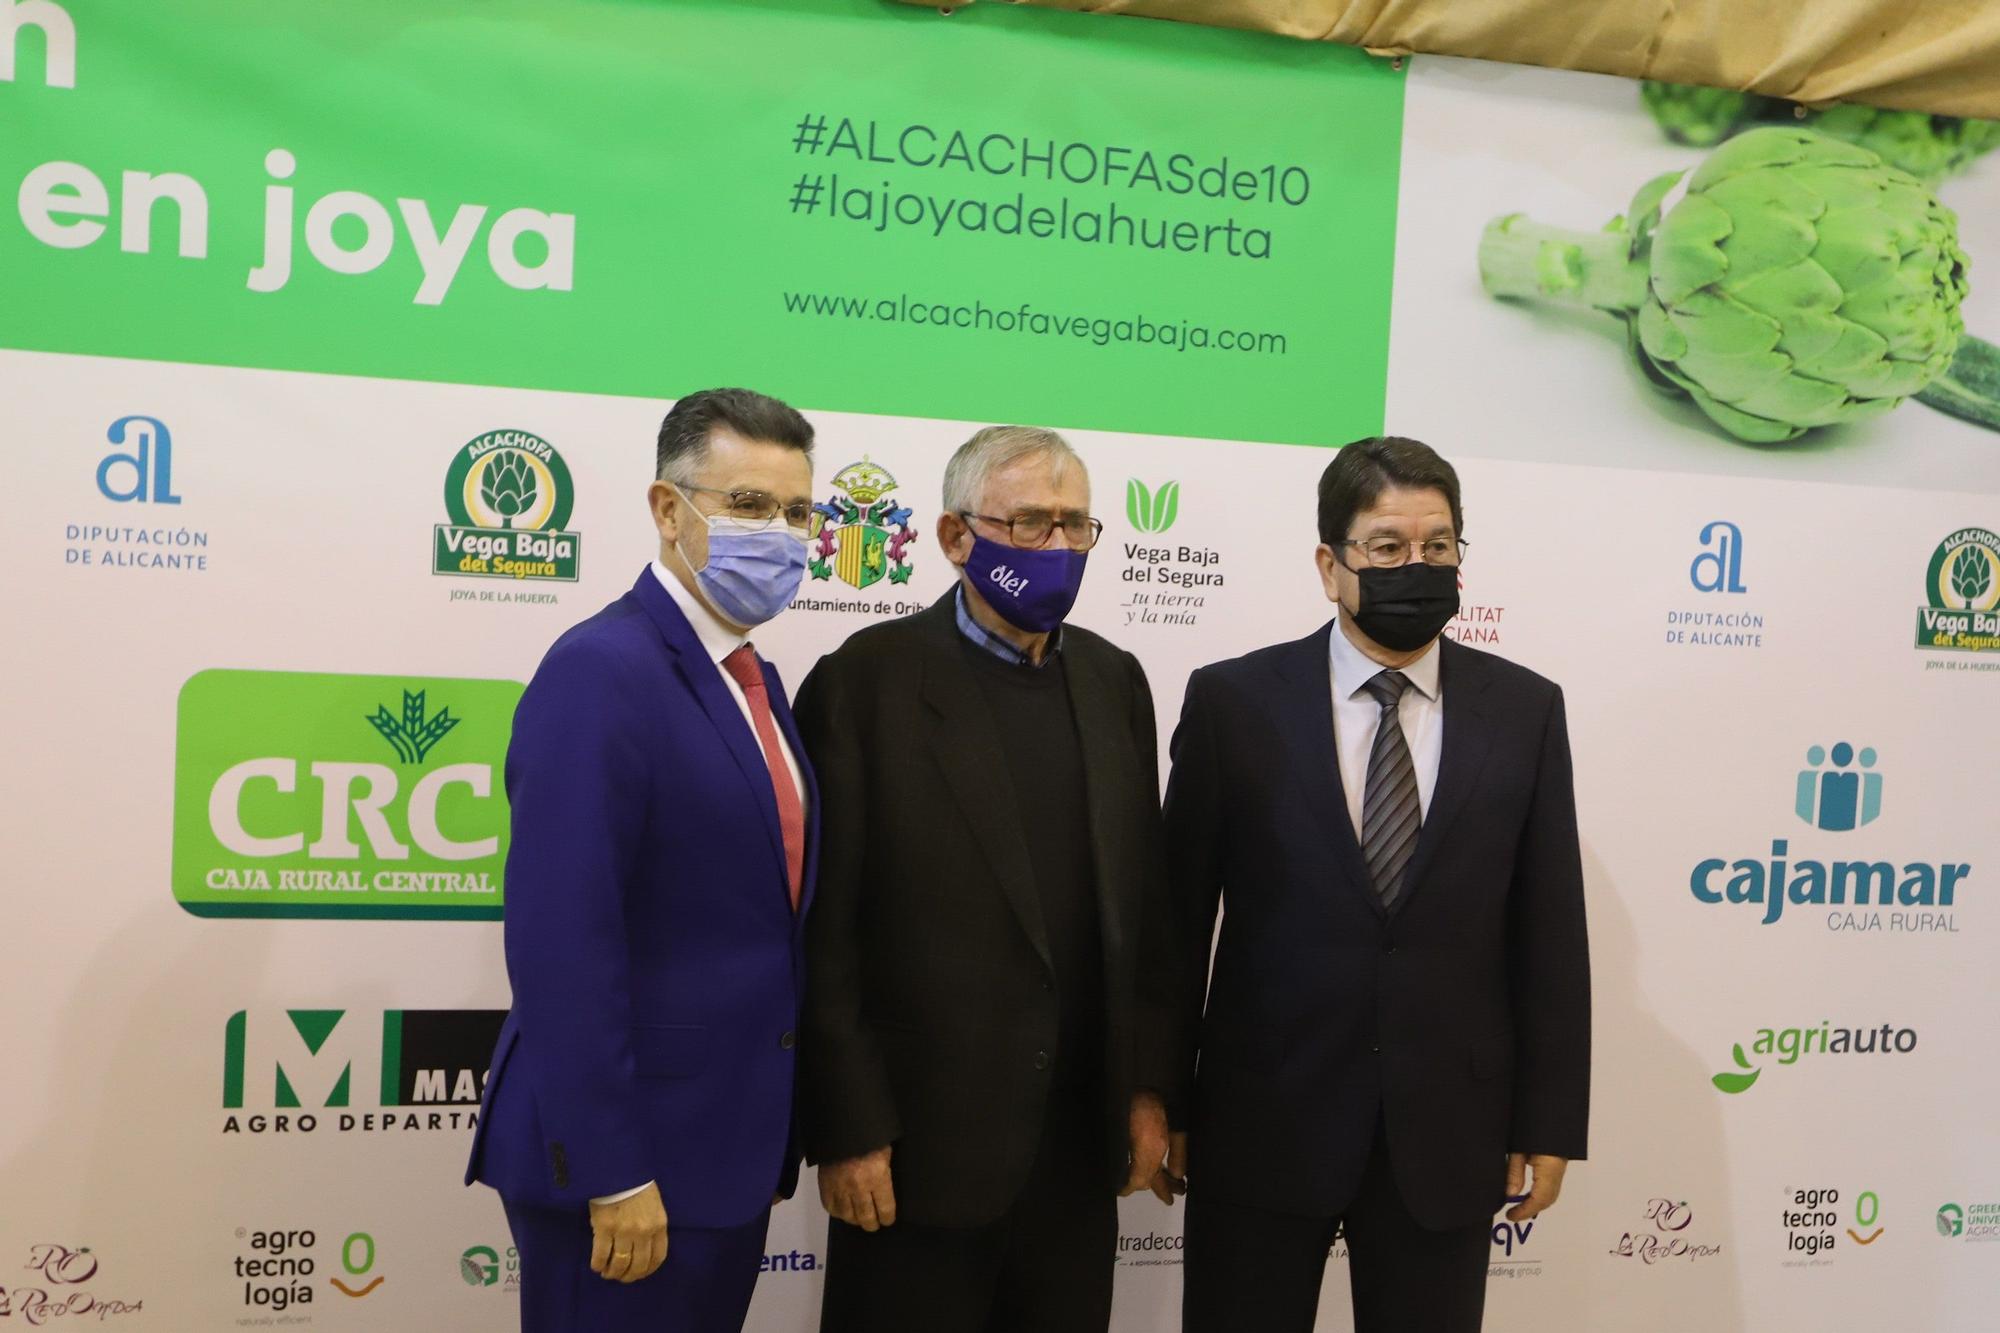 el caso de éxito de la marca Alcachofa Vega Baja